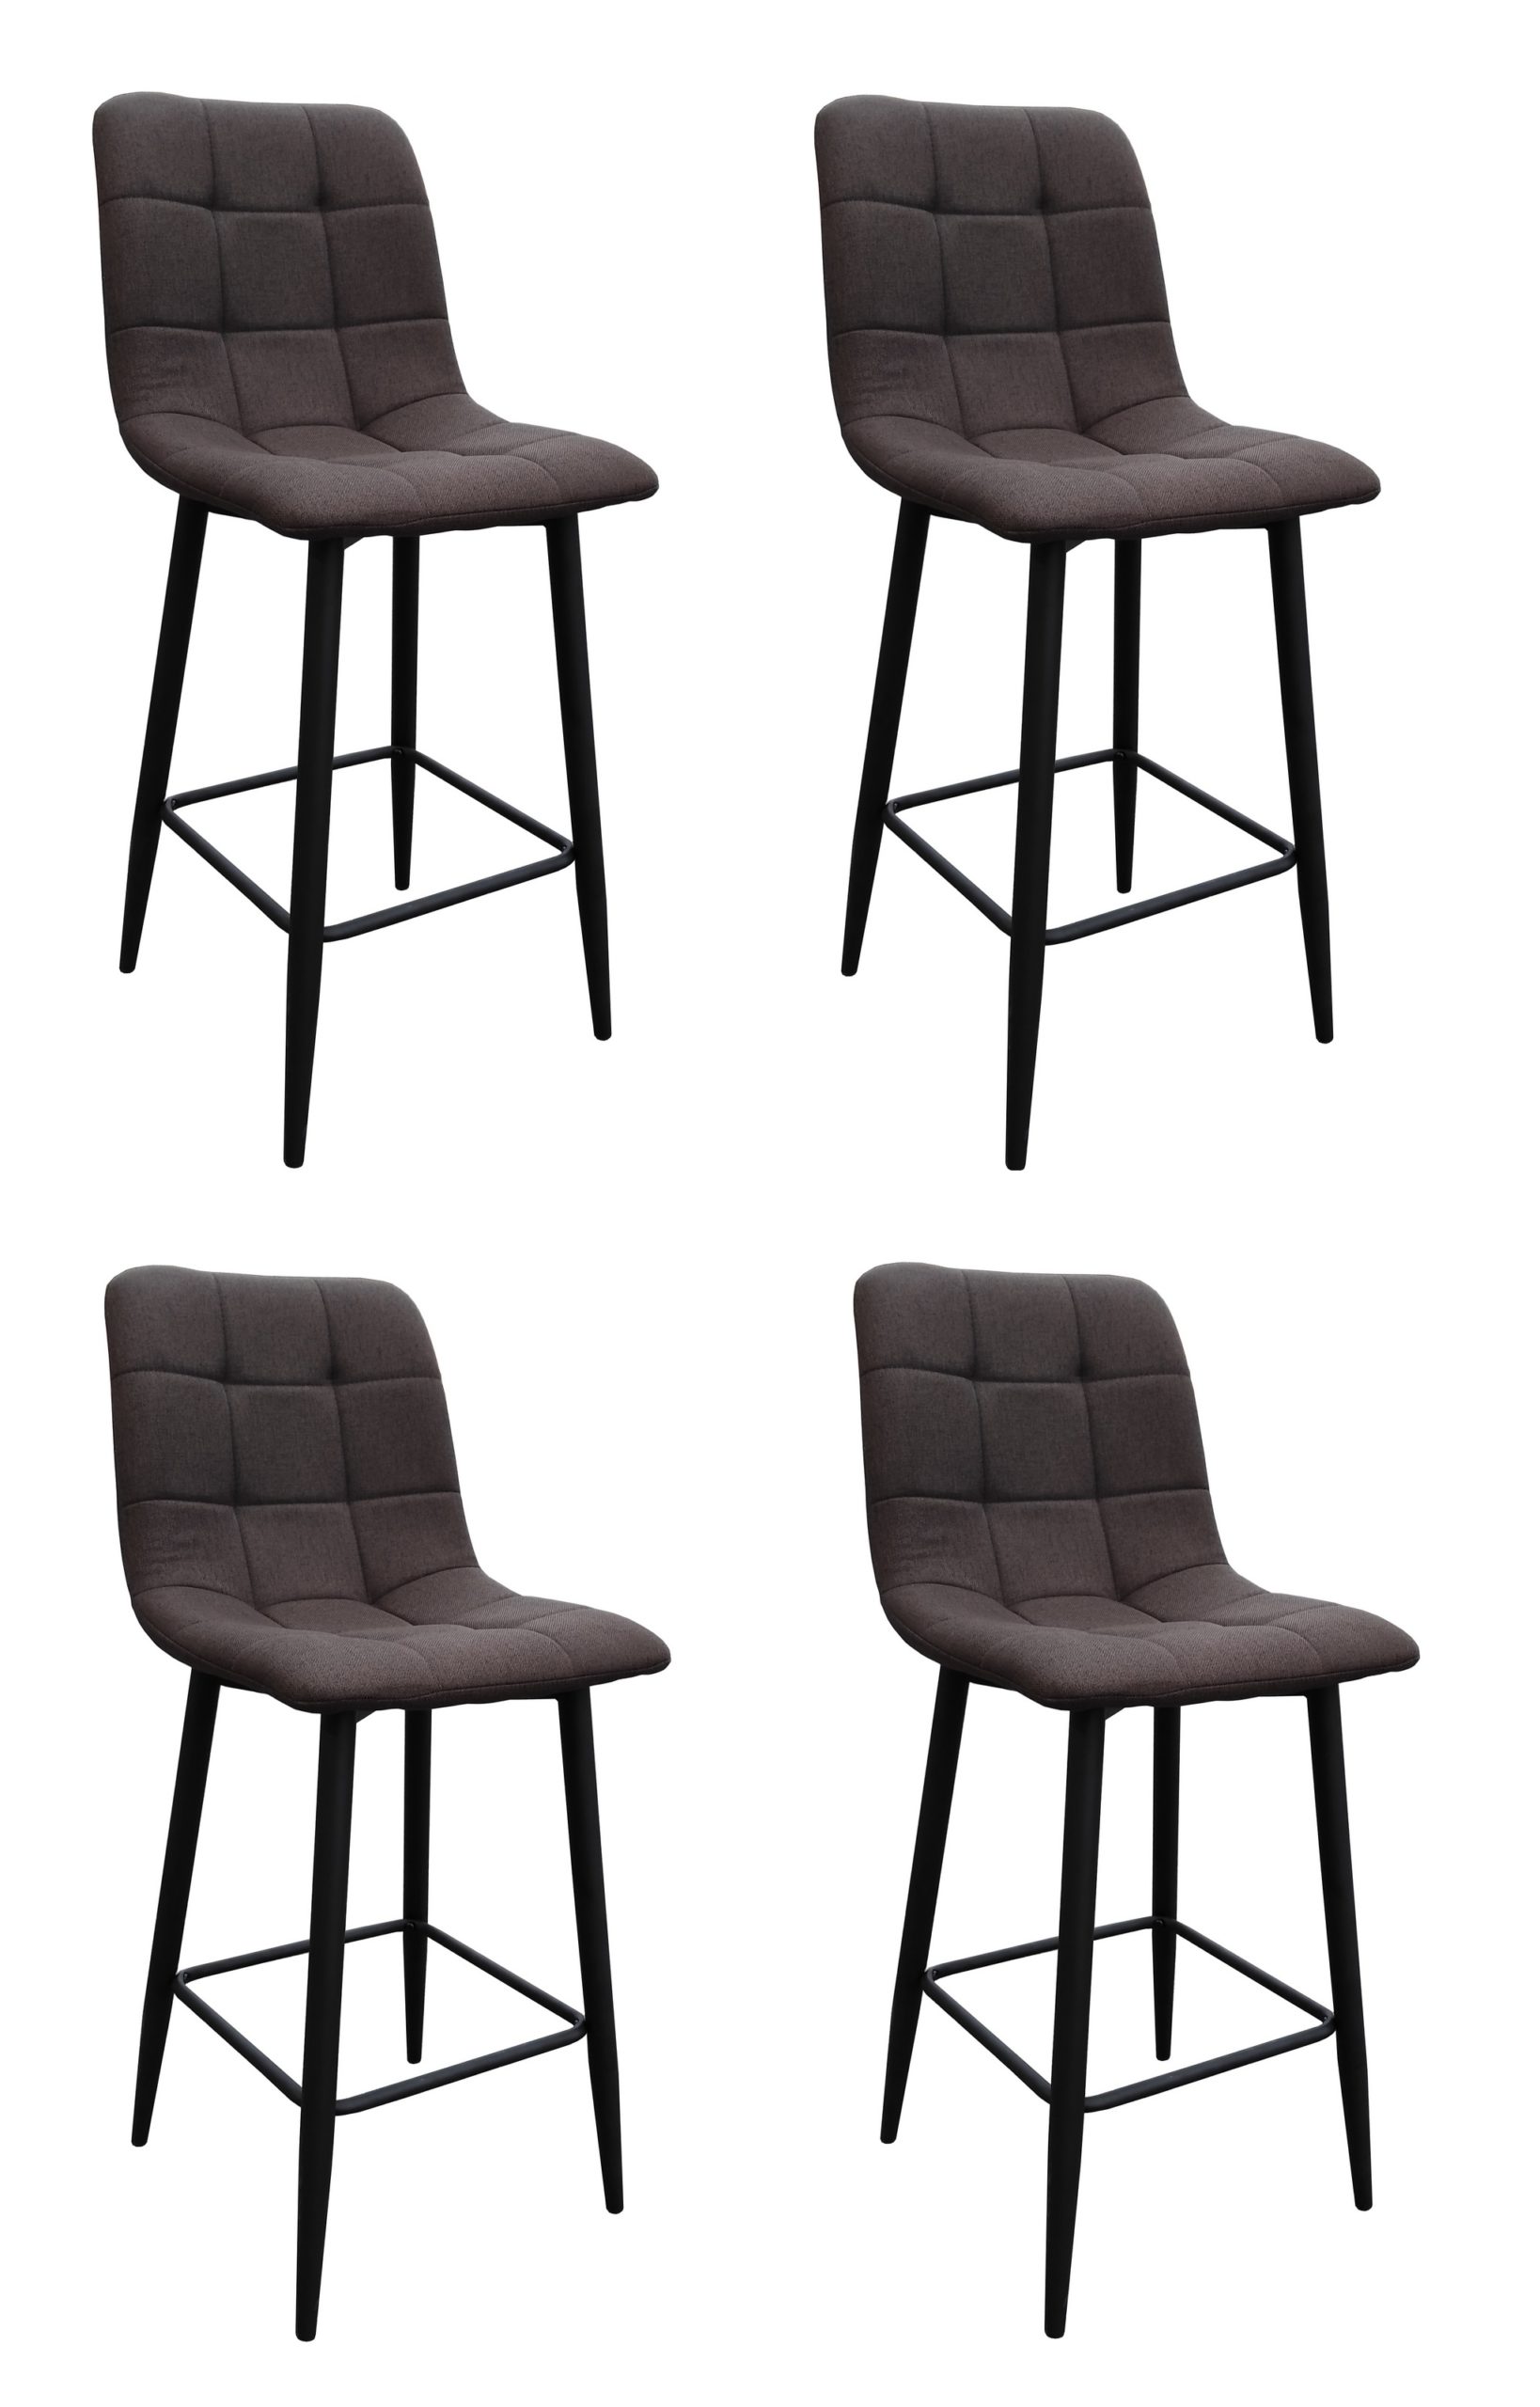 фото Комплект стульев полубарных терминал barny из текстиля, коричневый, 4 шт